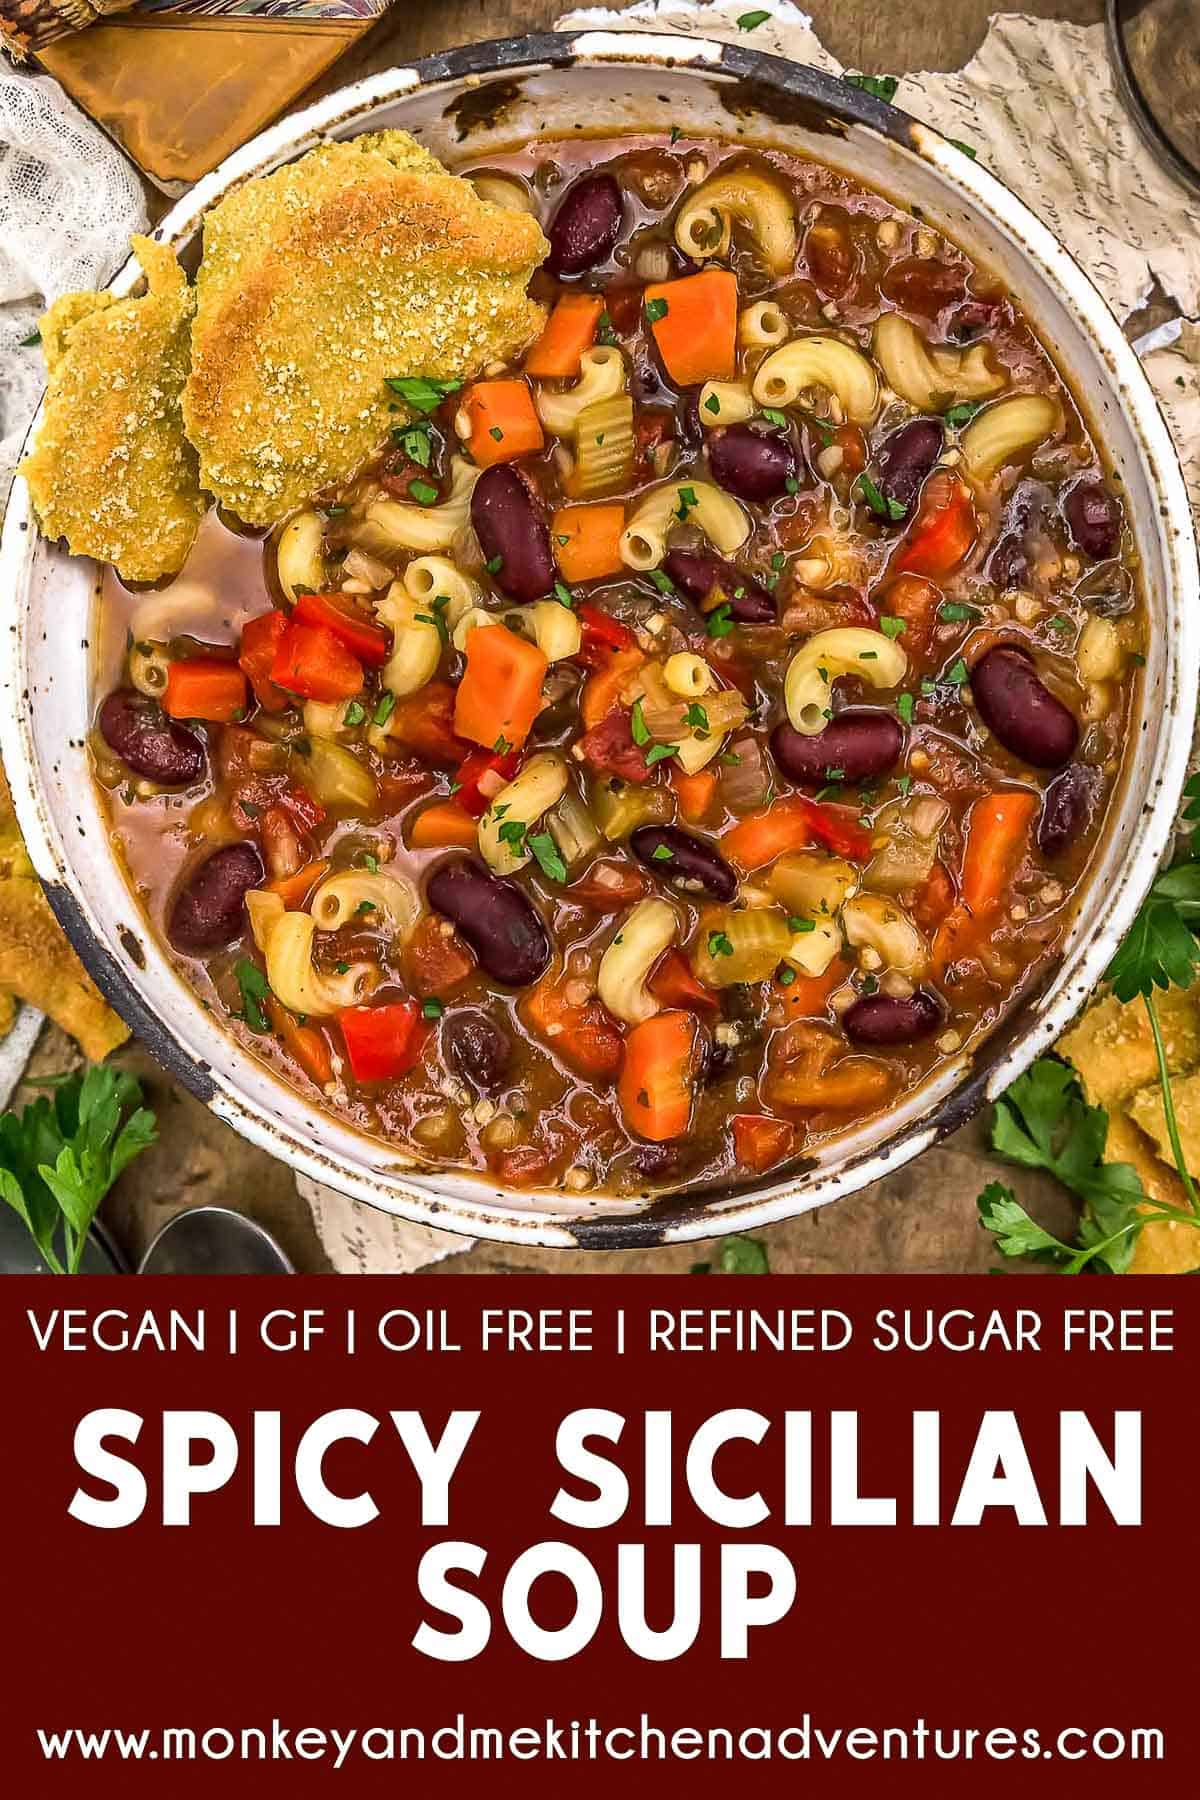 Spicy Sicilian Soup with Text Description